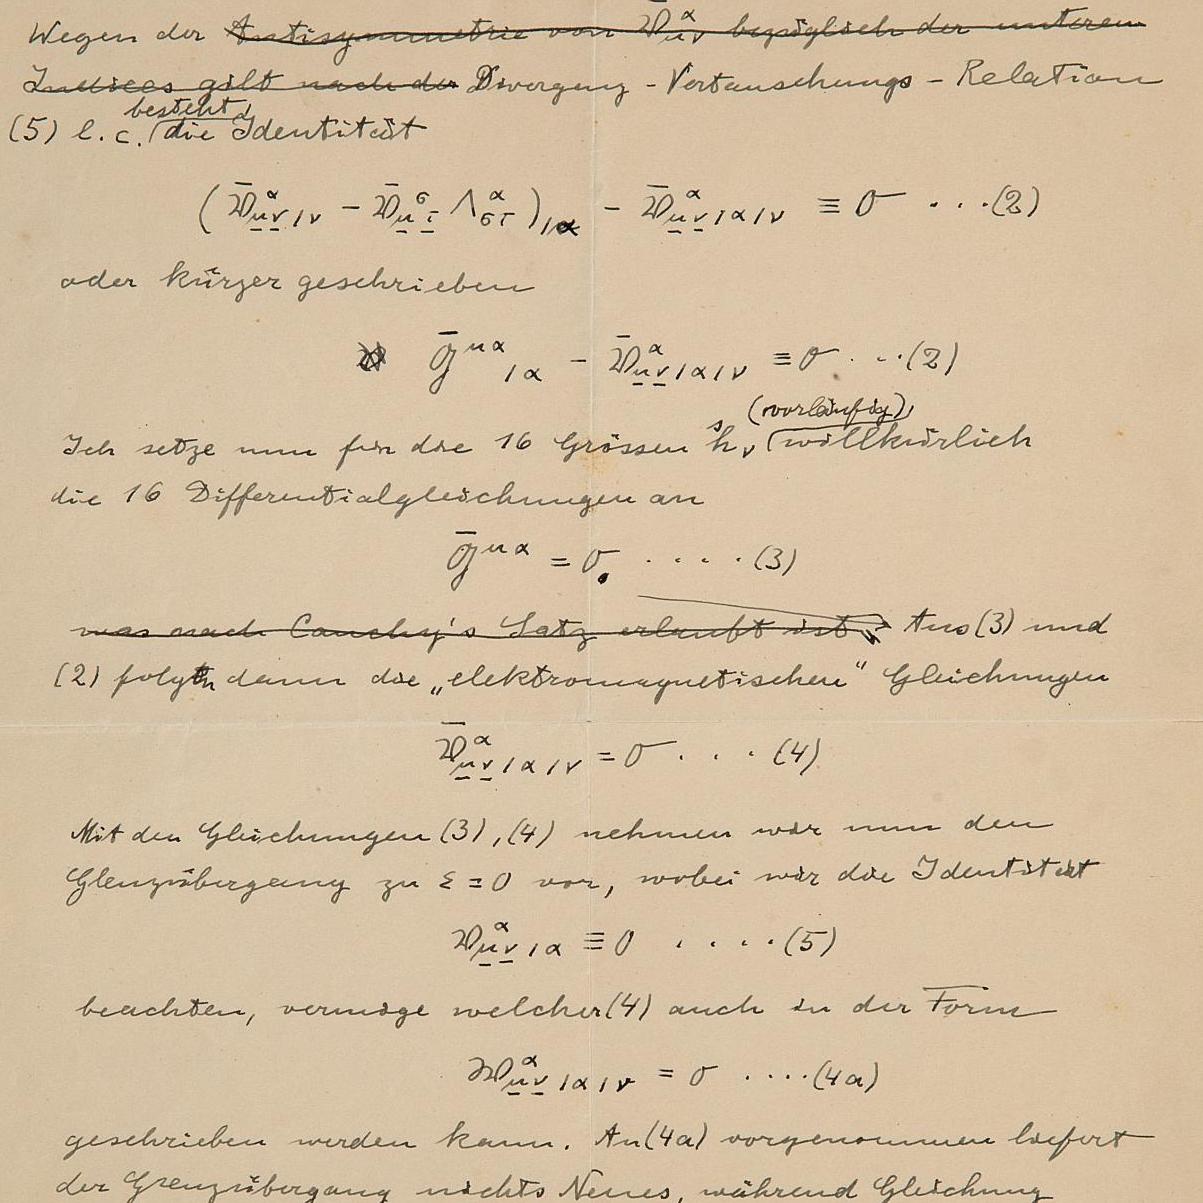 Les trésors de papier d'Albert Einstein - Après-vente